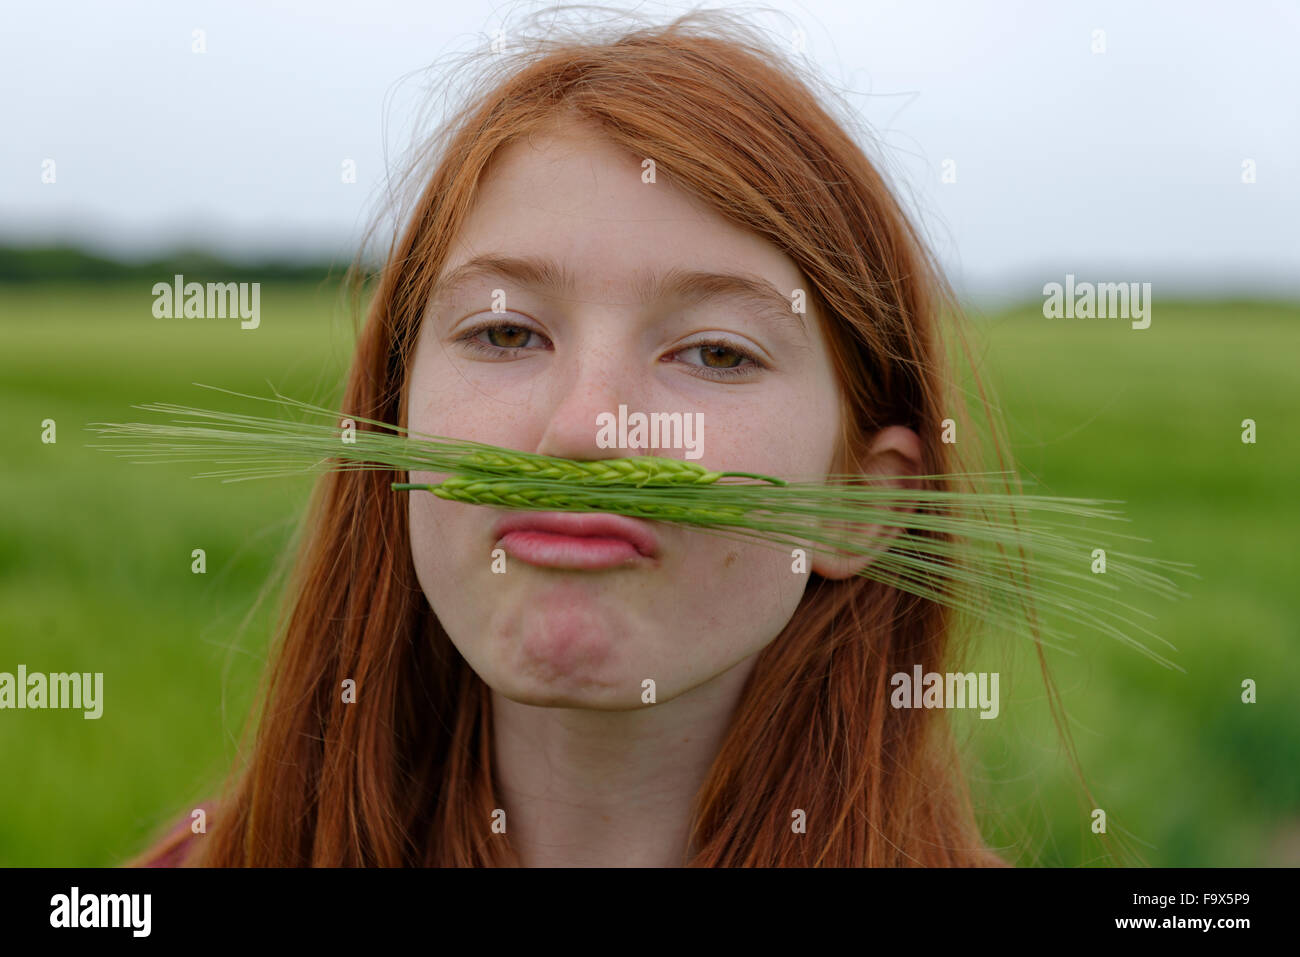 Portrait of teenage girl with barley moustache Stock Photo